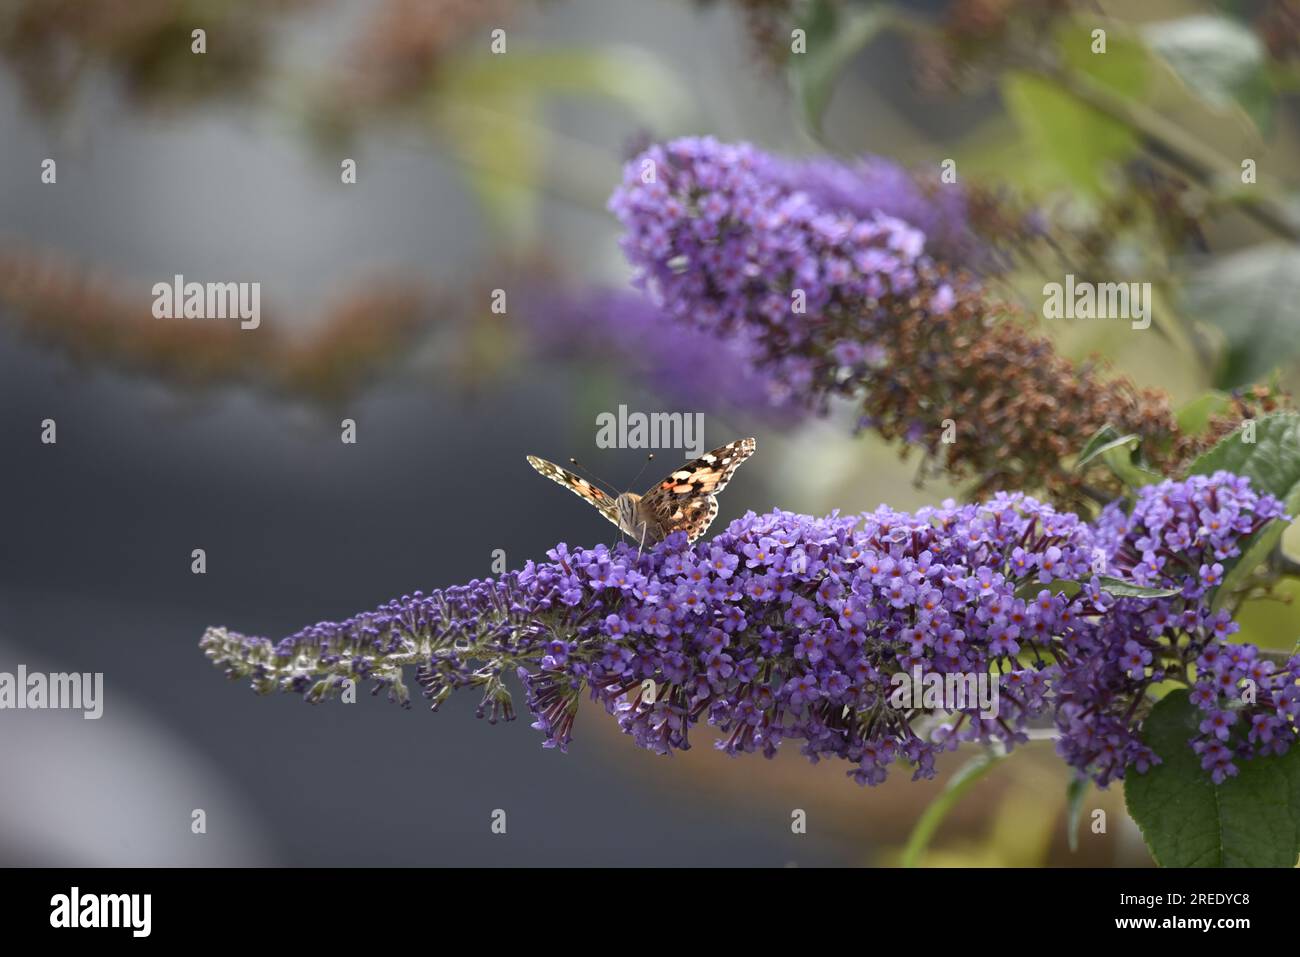 Inférieur milieu avant-plan image d'un papillon de Dame peint (Vanessa cardui) regardant dans la caméra de Purple Buddleia Flowers with Wings Open, Royaume-Uni Banque D'Images